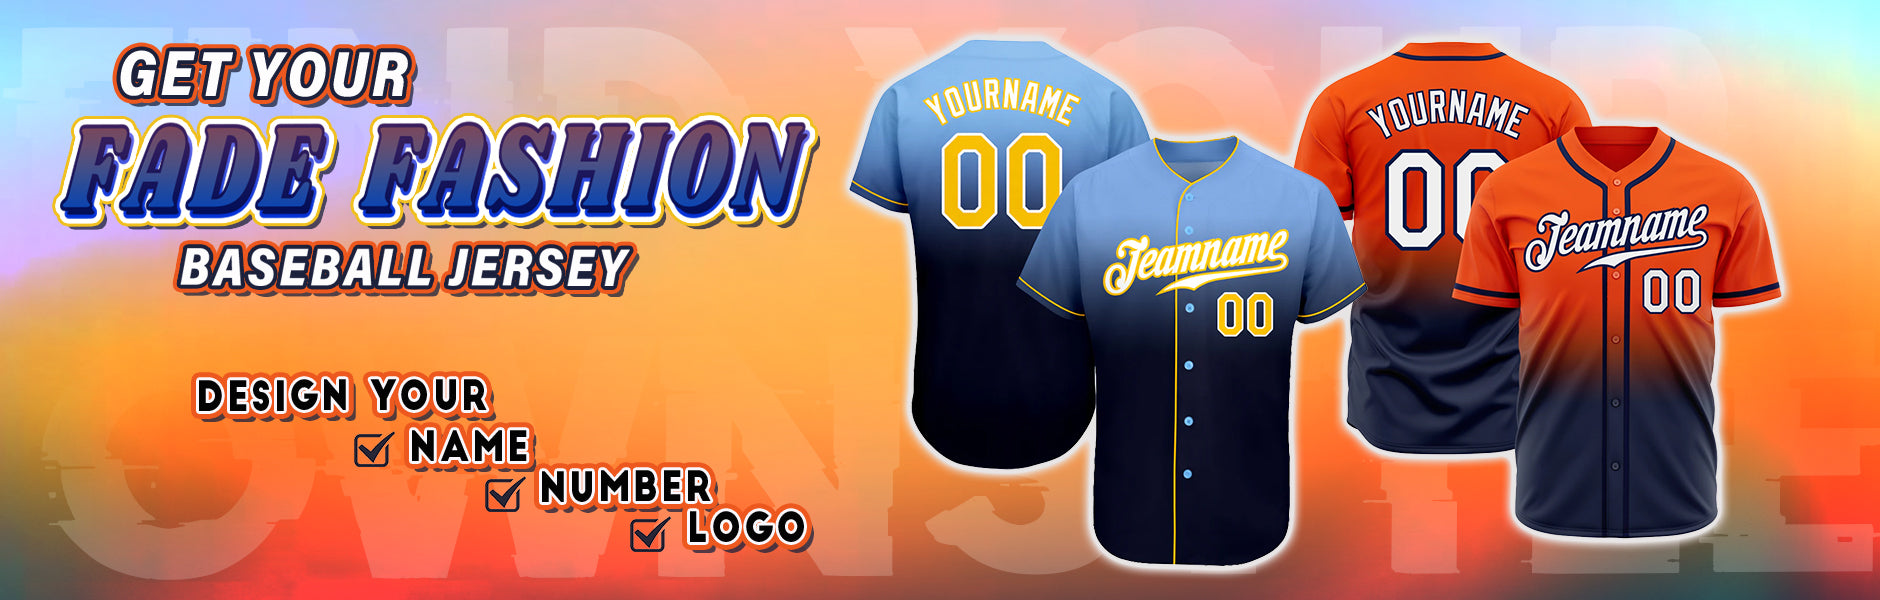 custom fade fashion baseball jersey